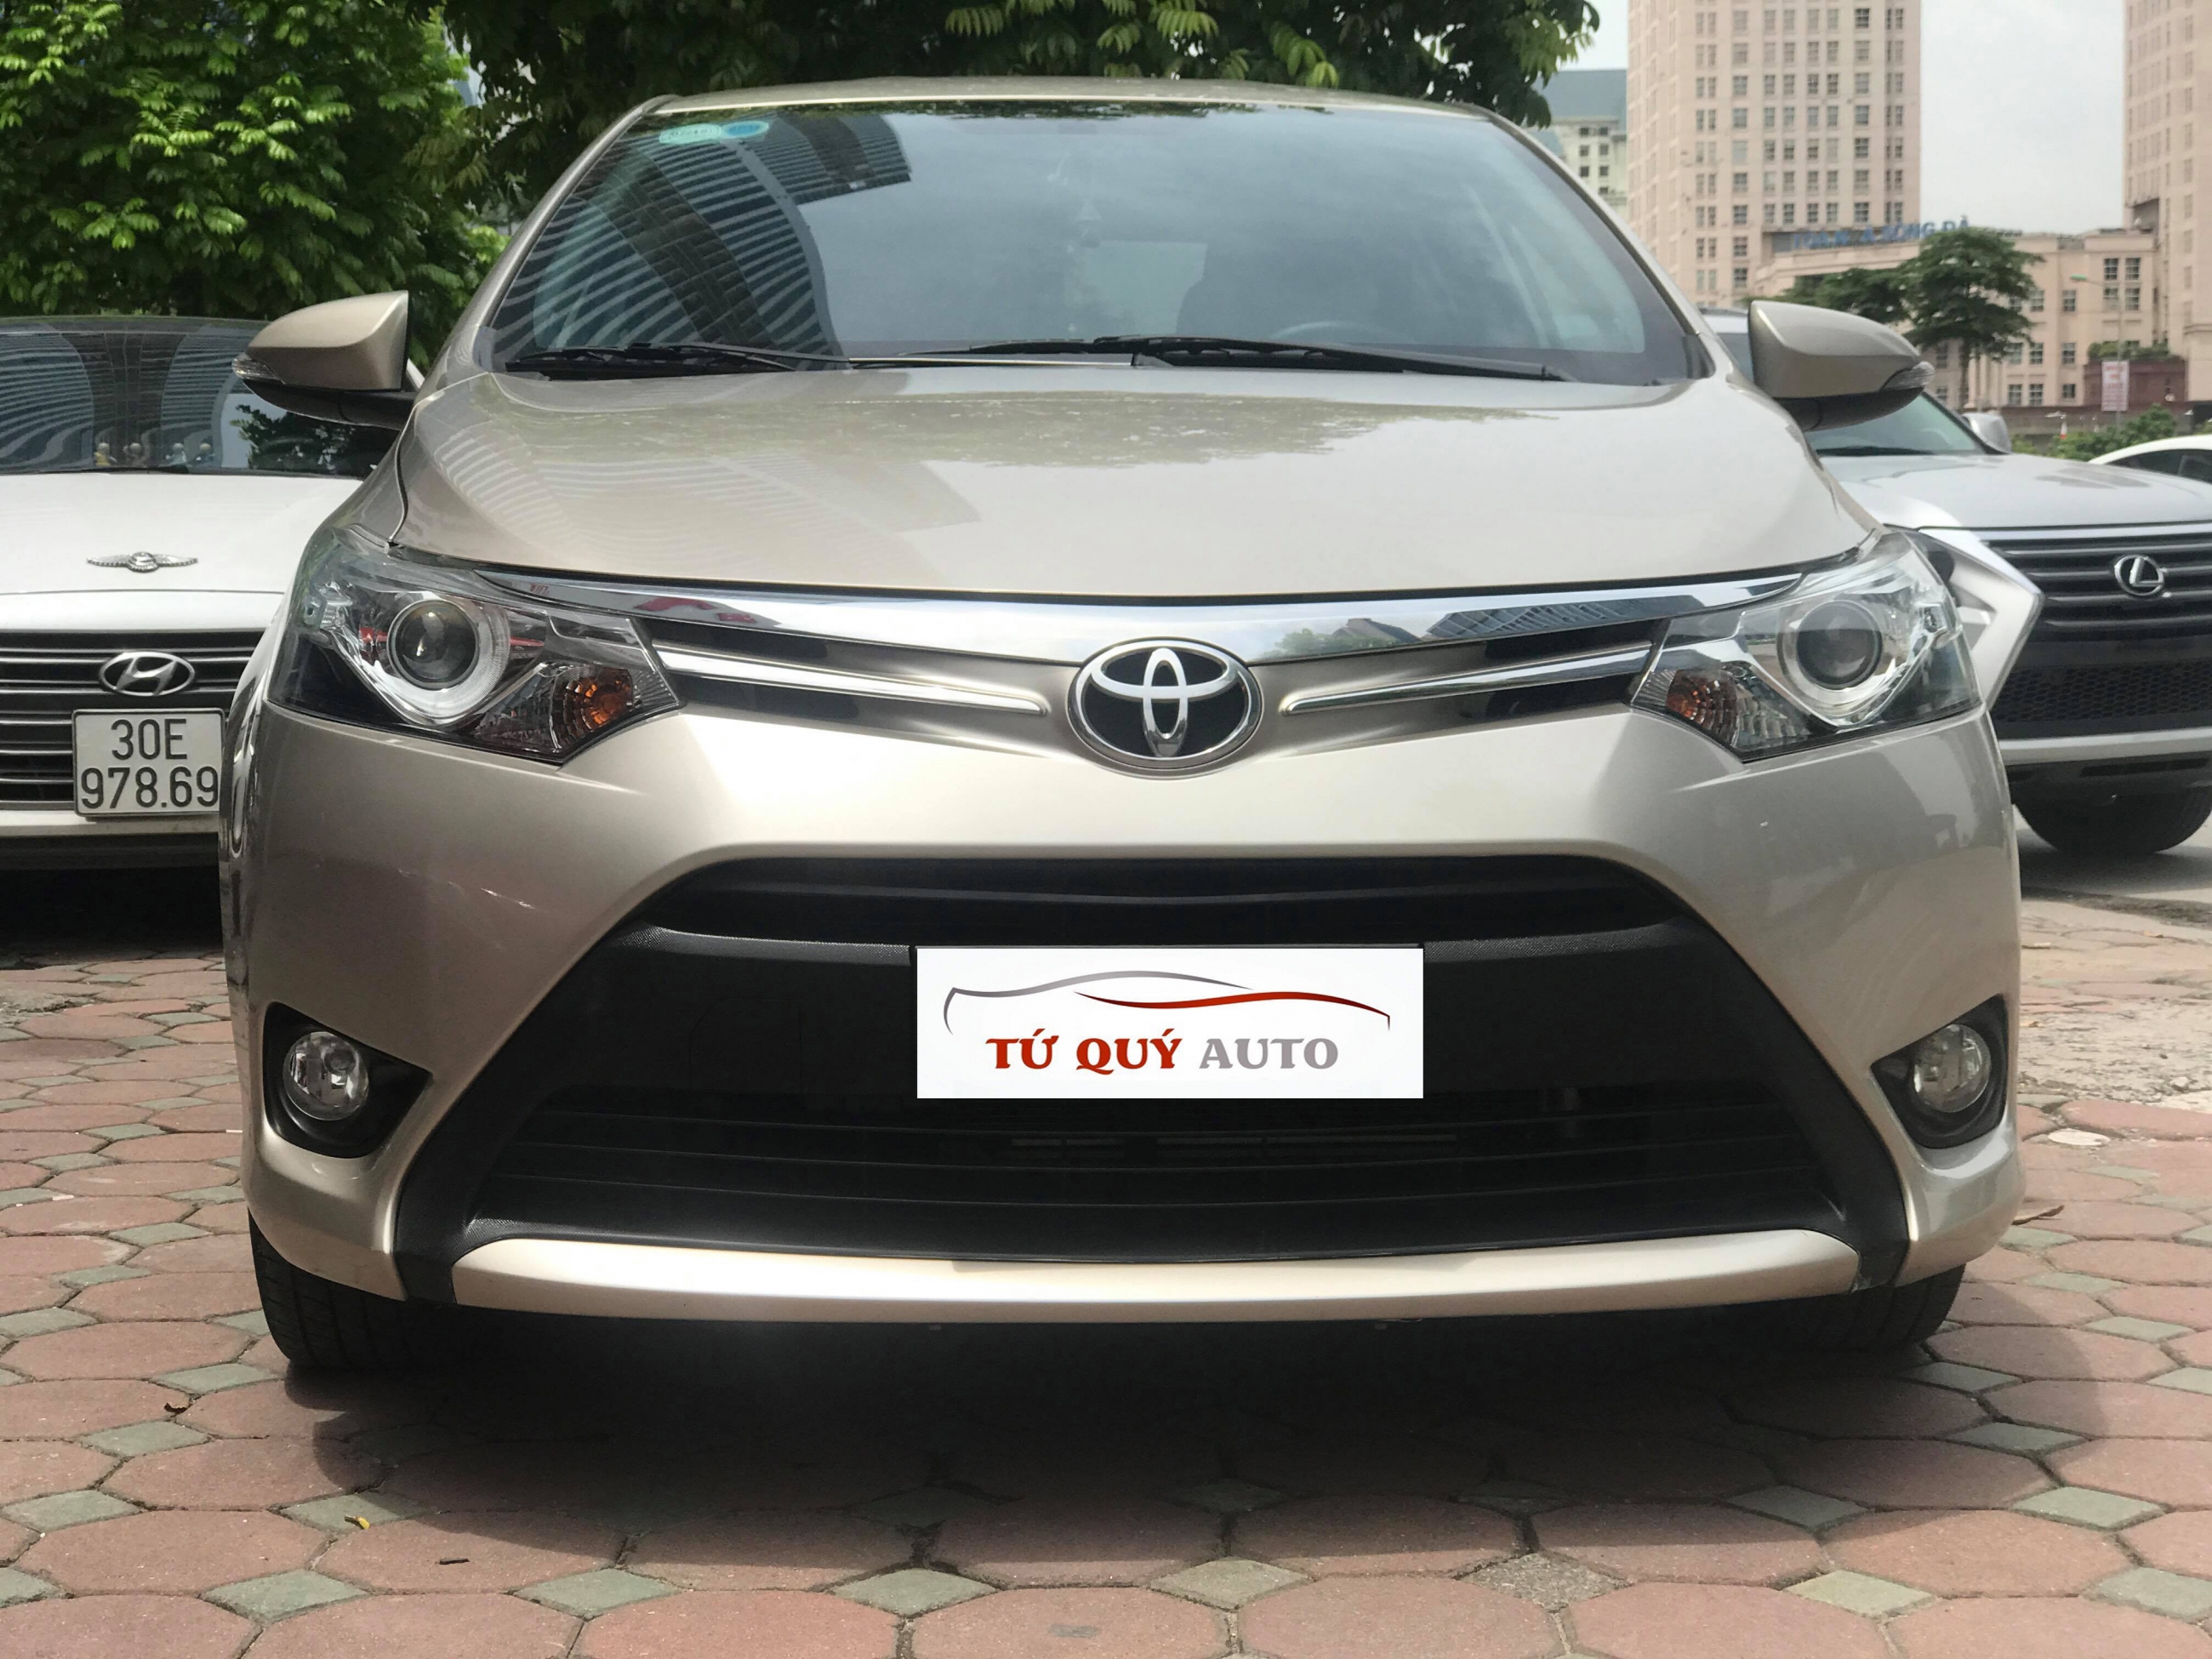 Đánh giá Toyota Vios 2016 Ấn tượng từ hộp số và cảm giác lái